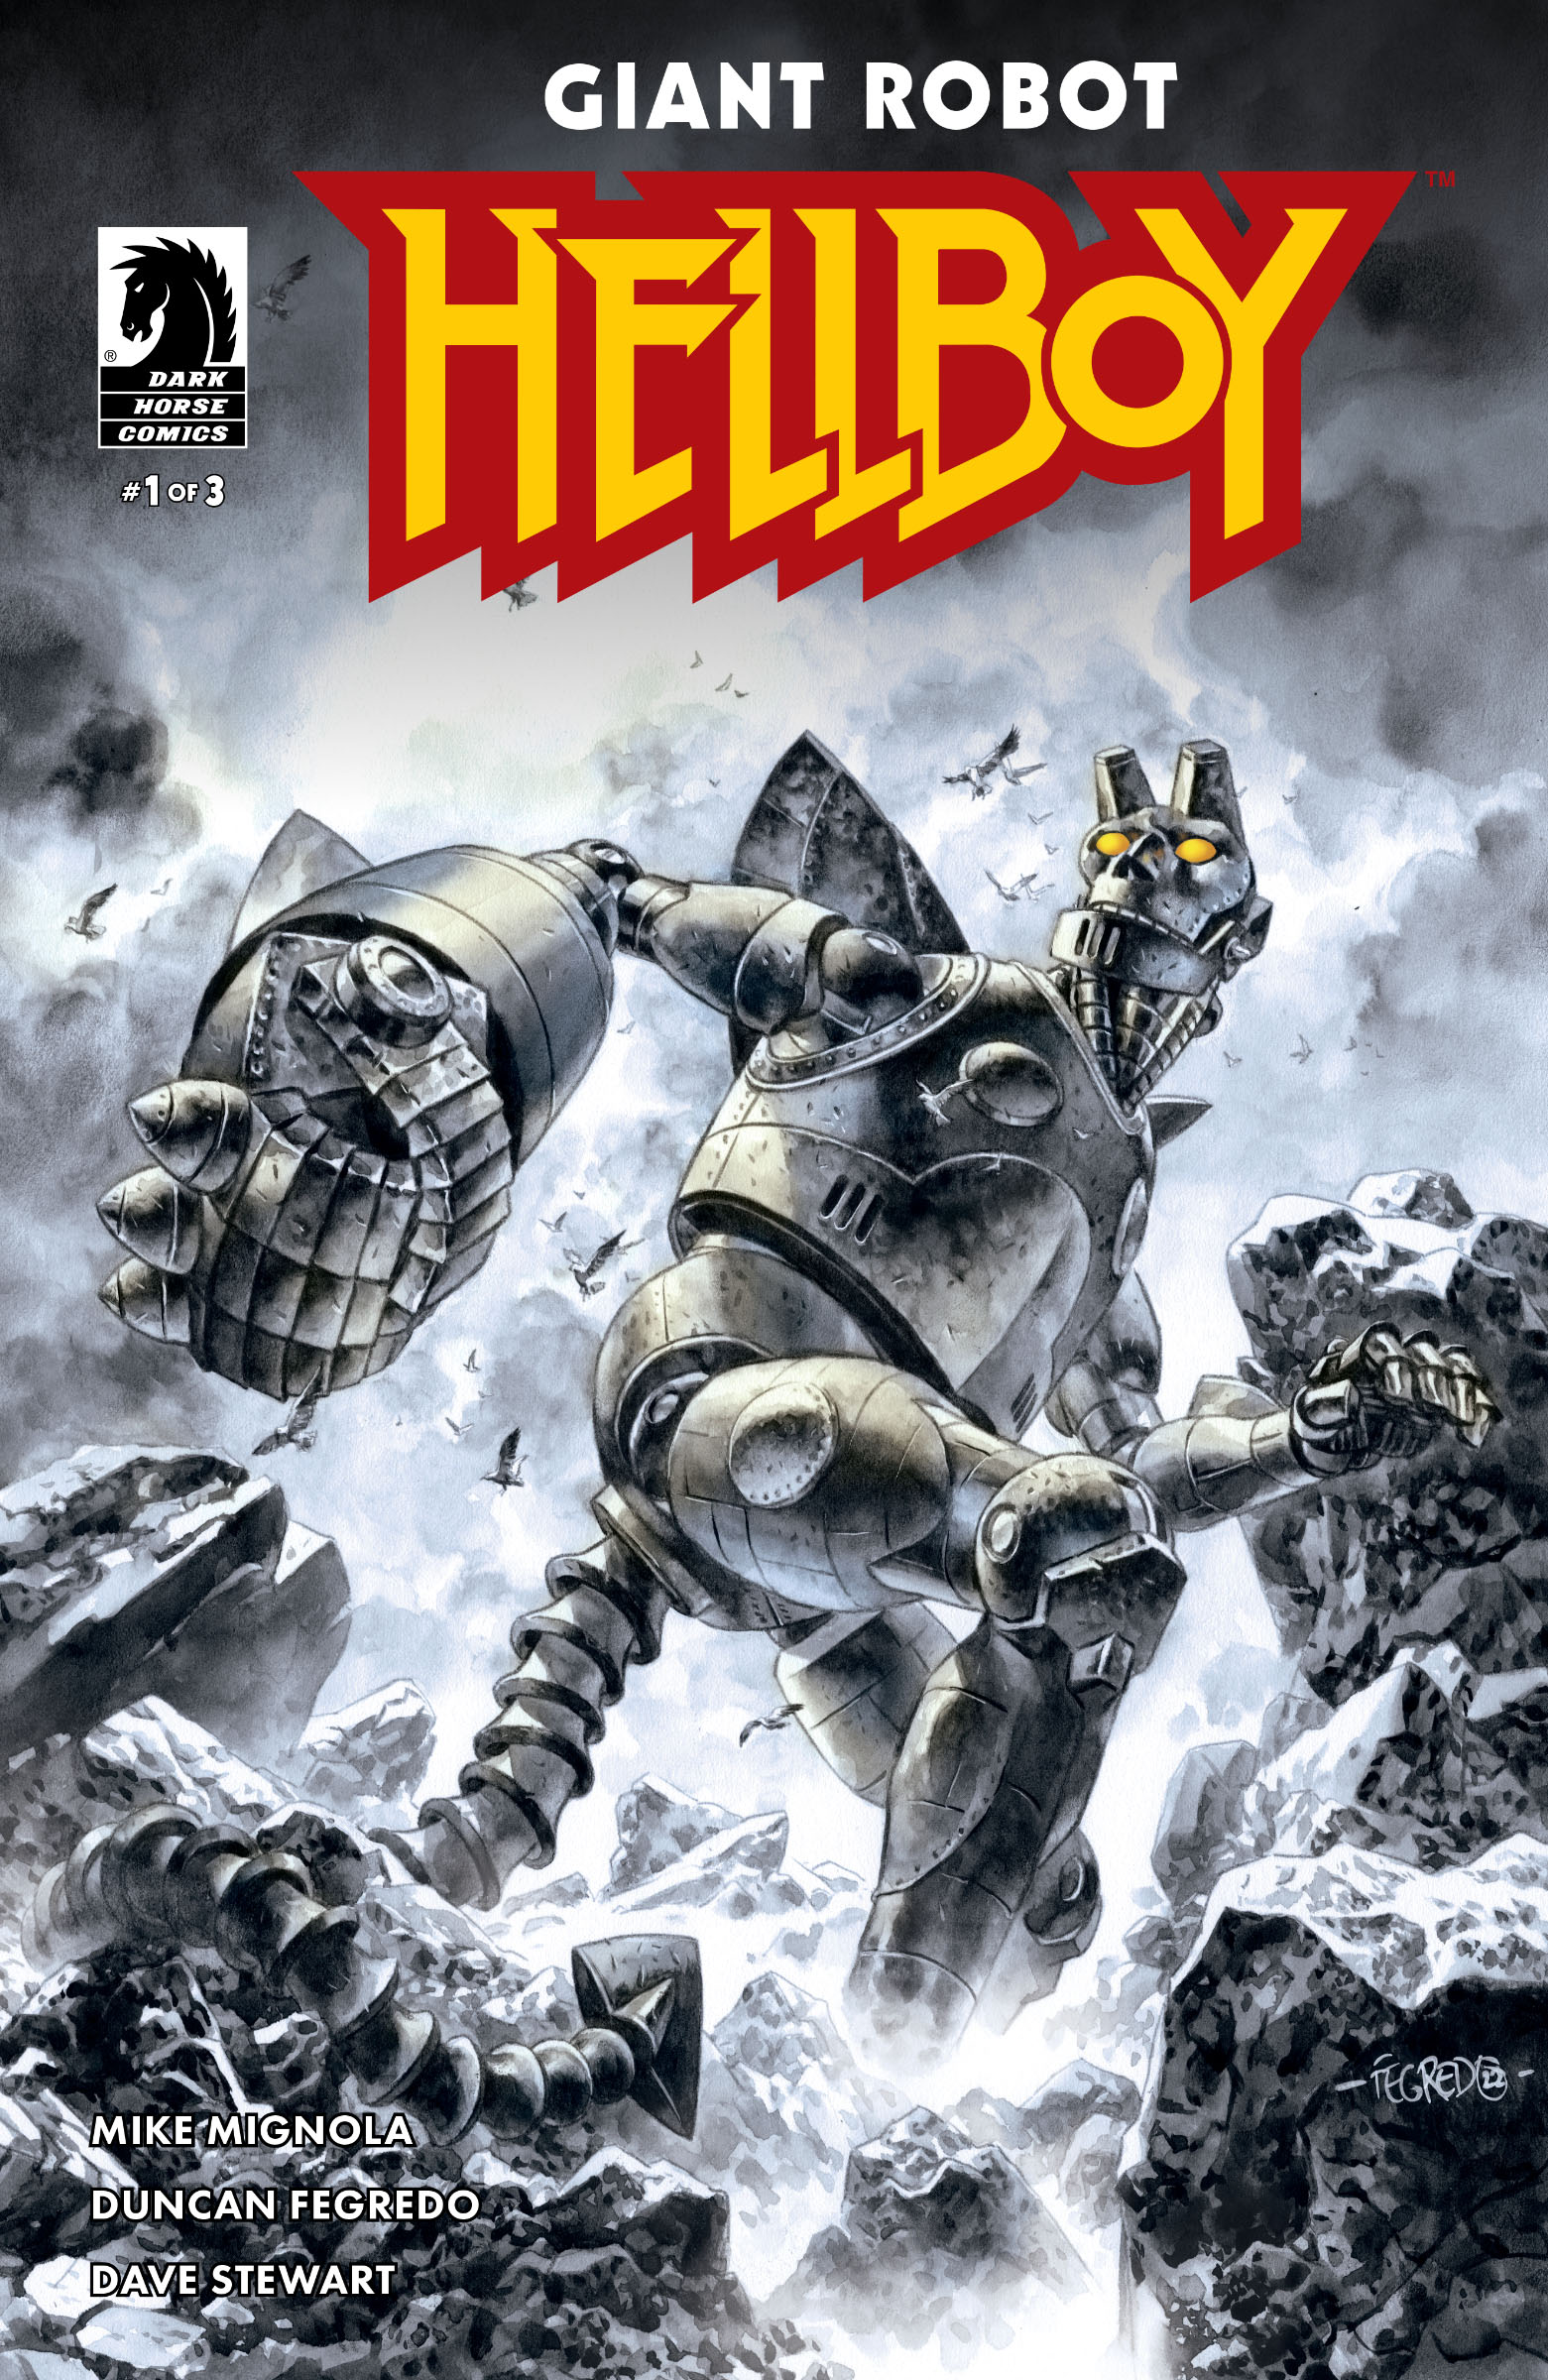 Kansi Giant Robot Hellboy #1